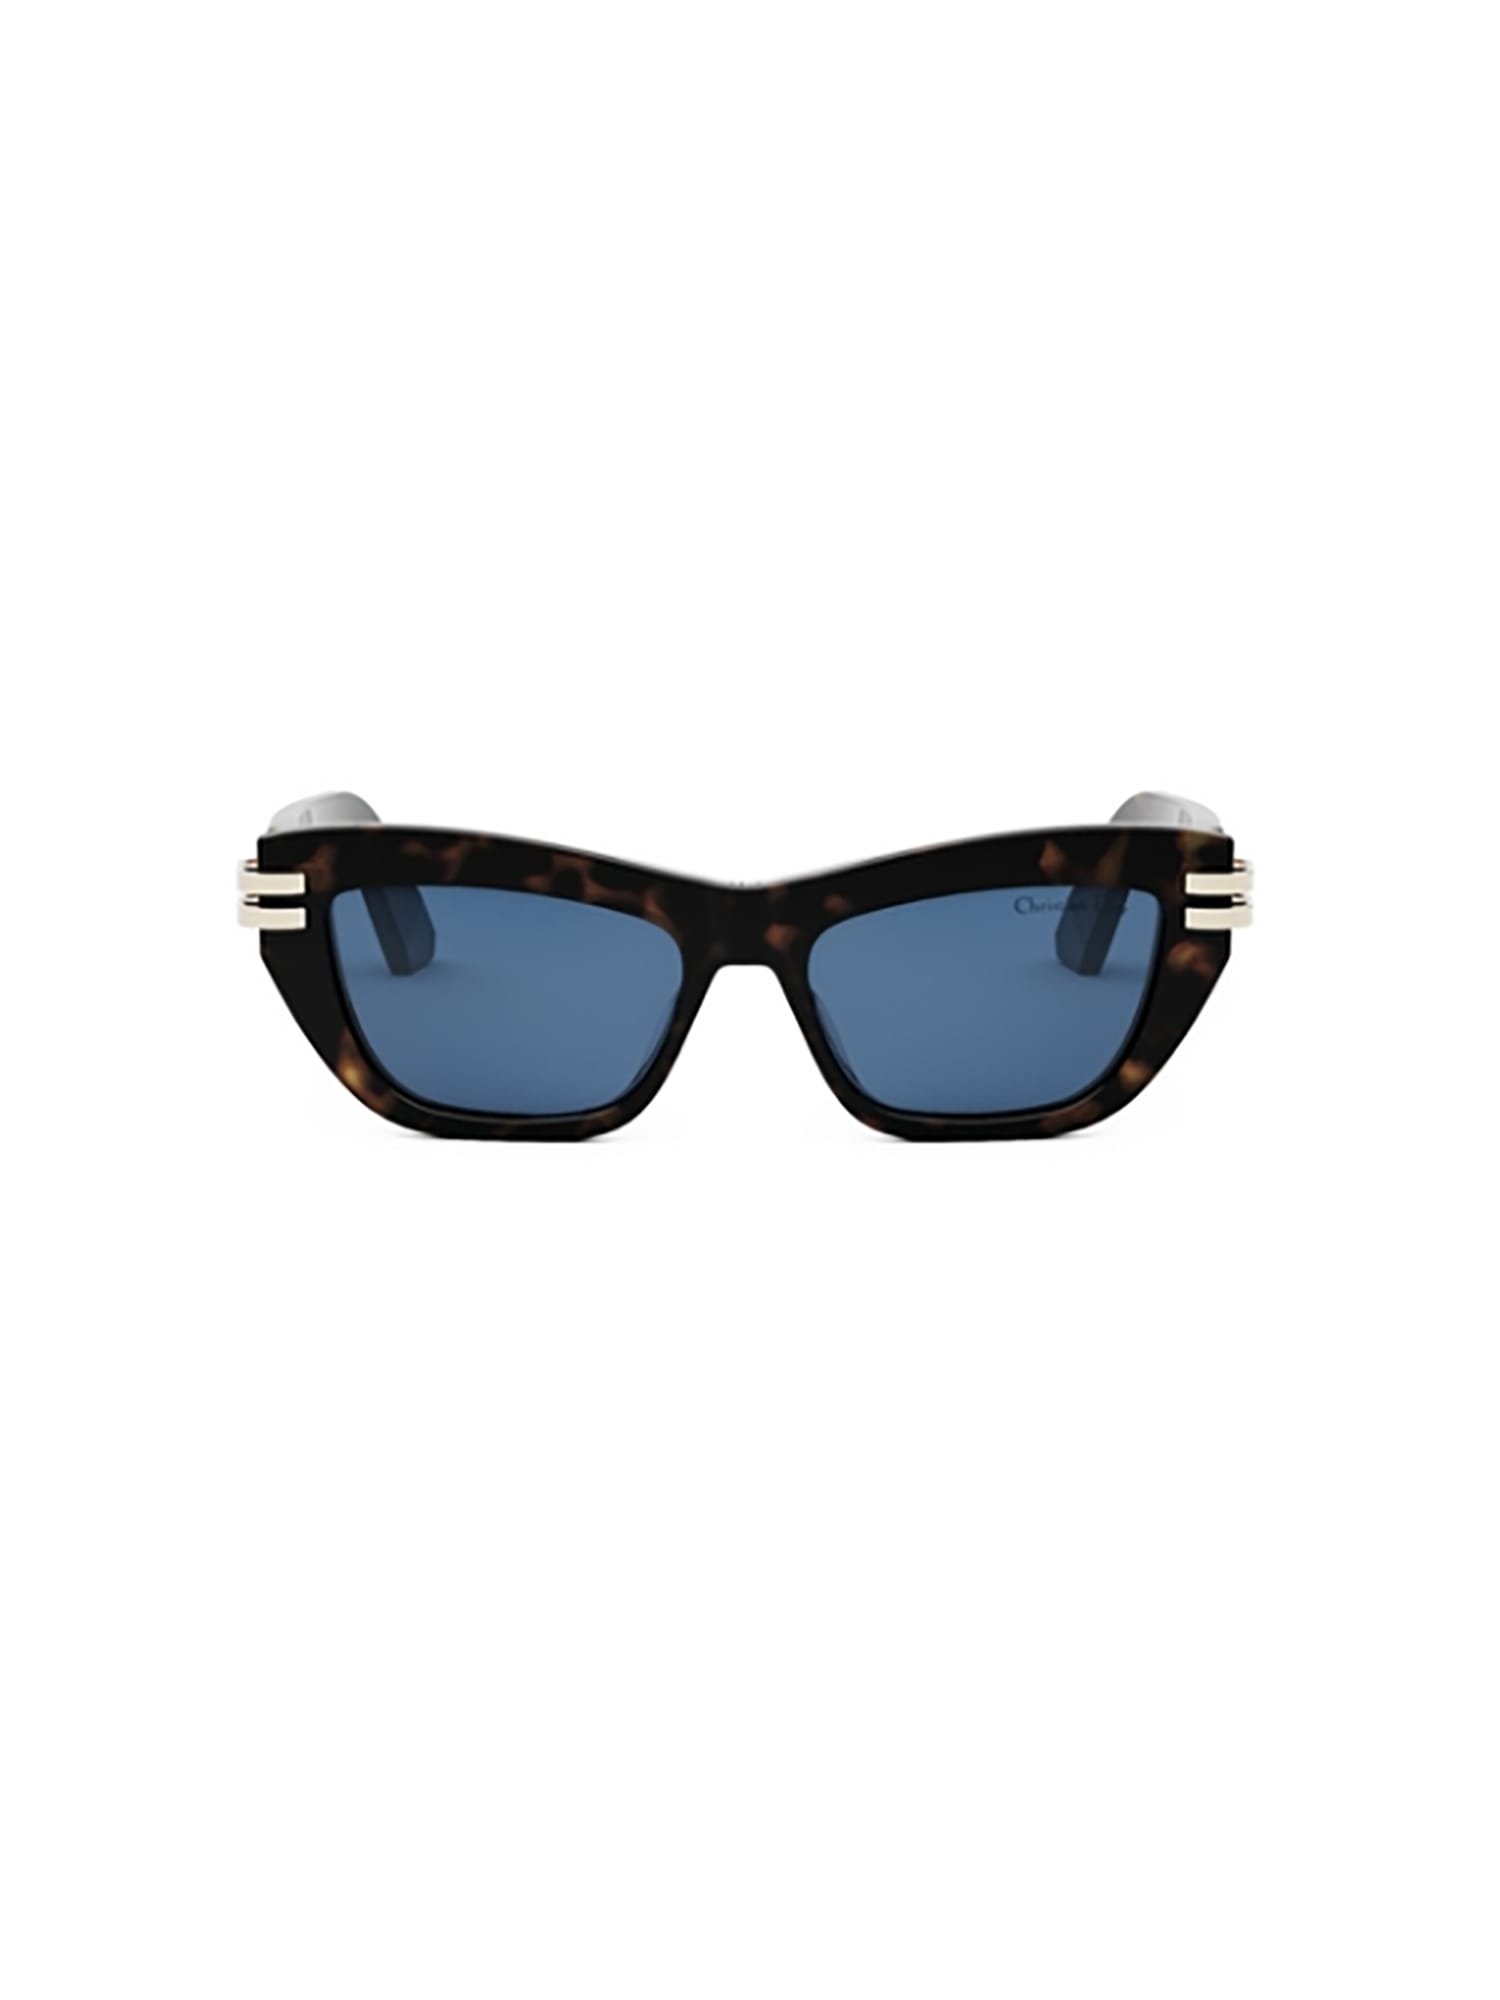 CDIOR B2U Sunglasses